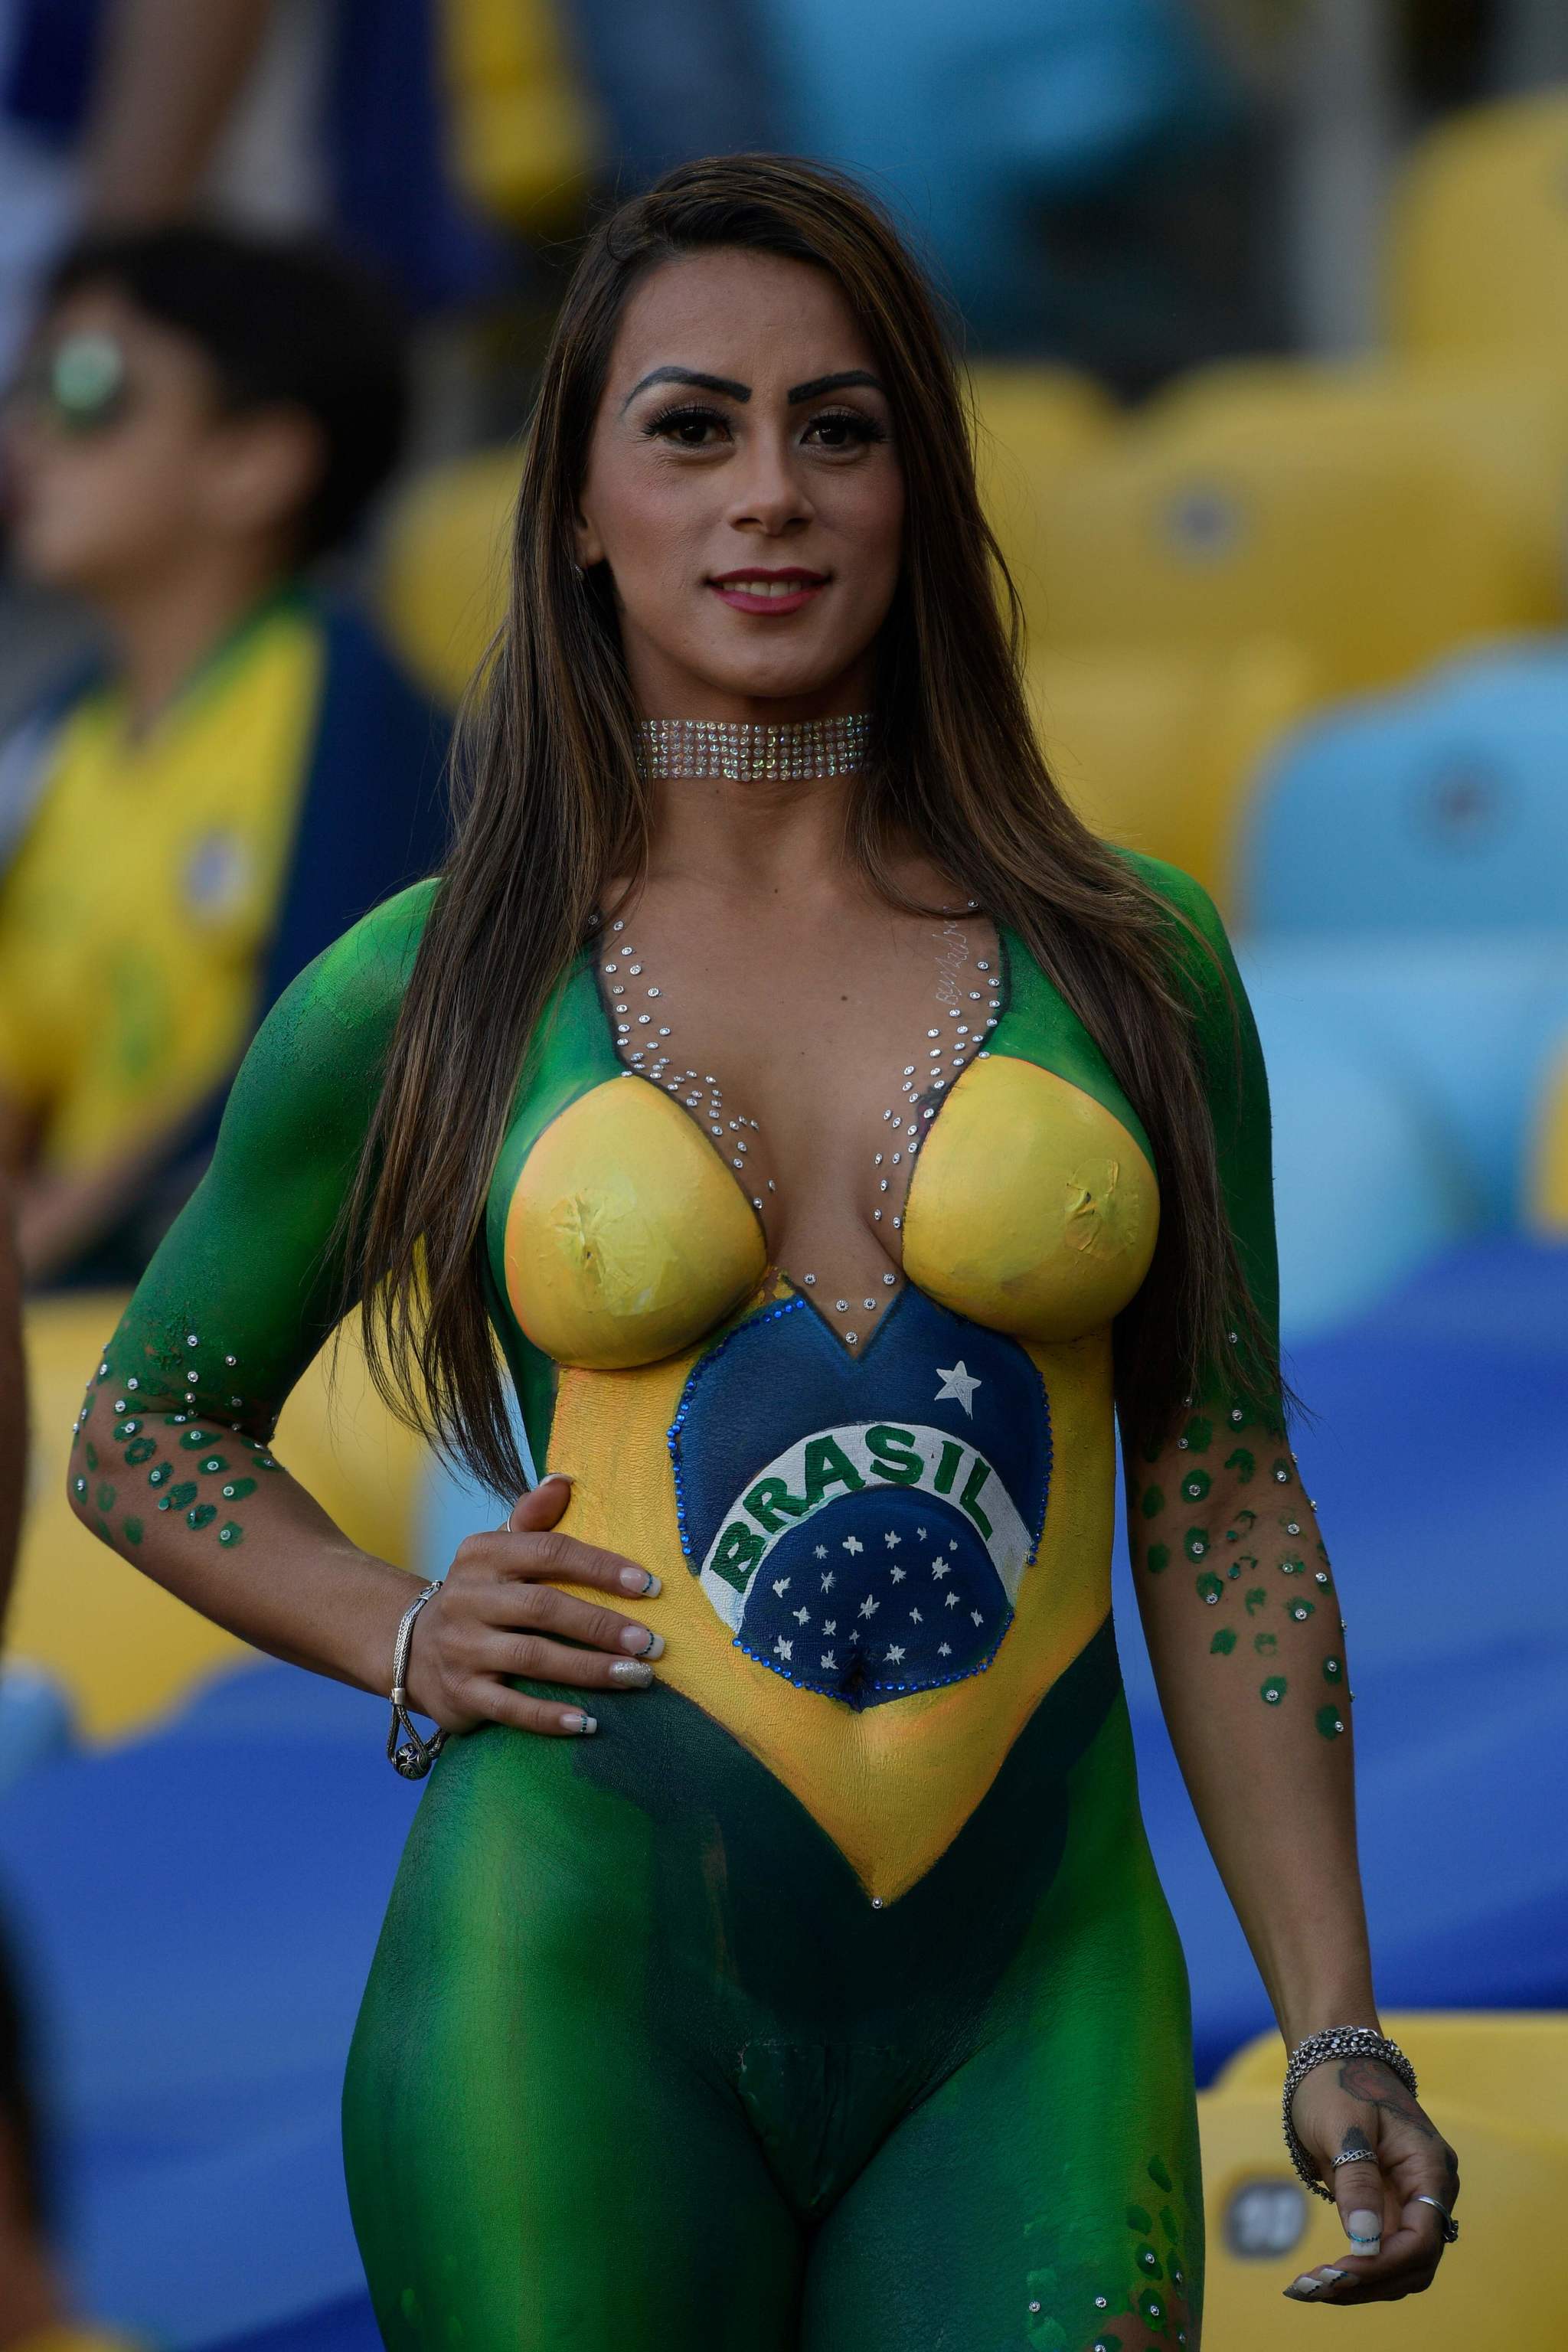 Brazilian women